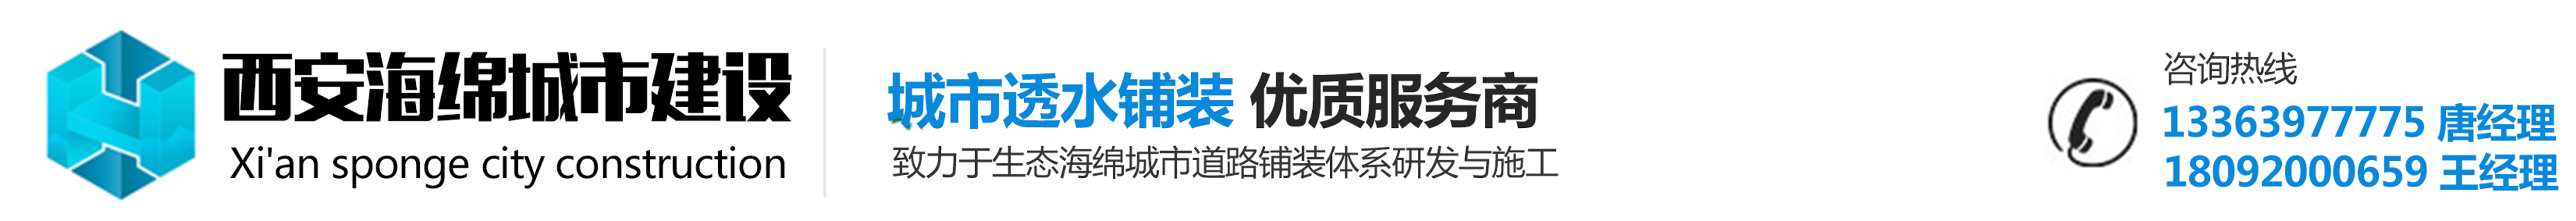 西安海绵透水混凝土公司_Logo